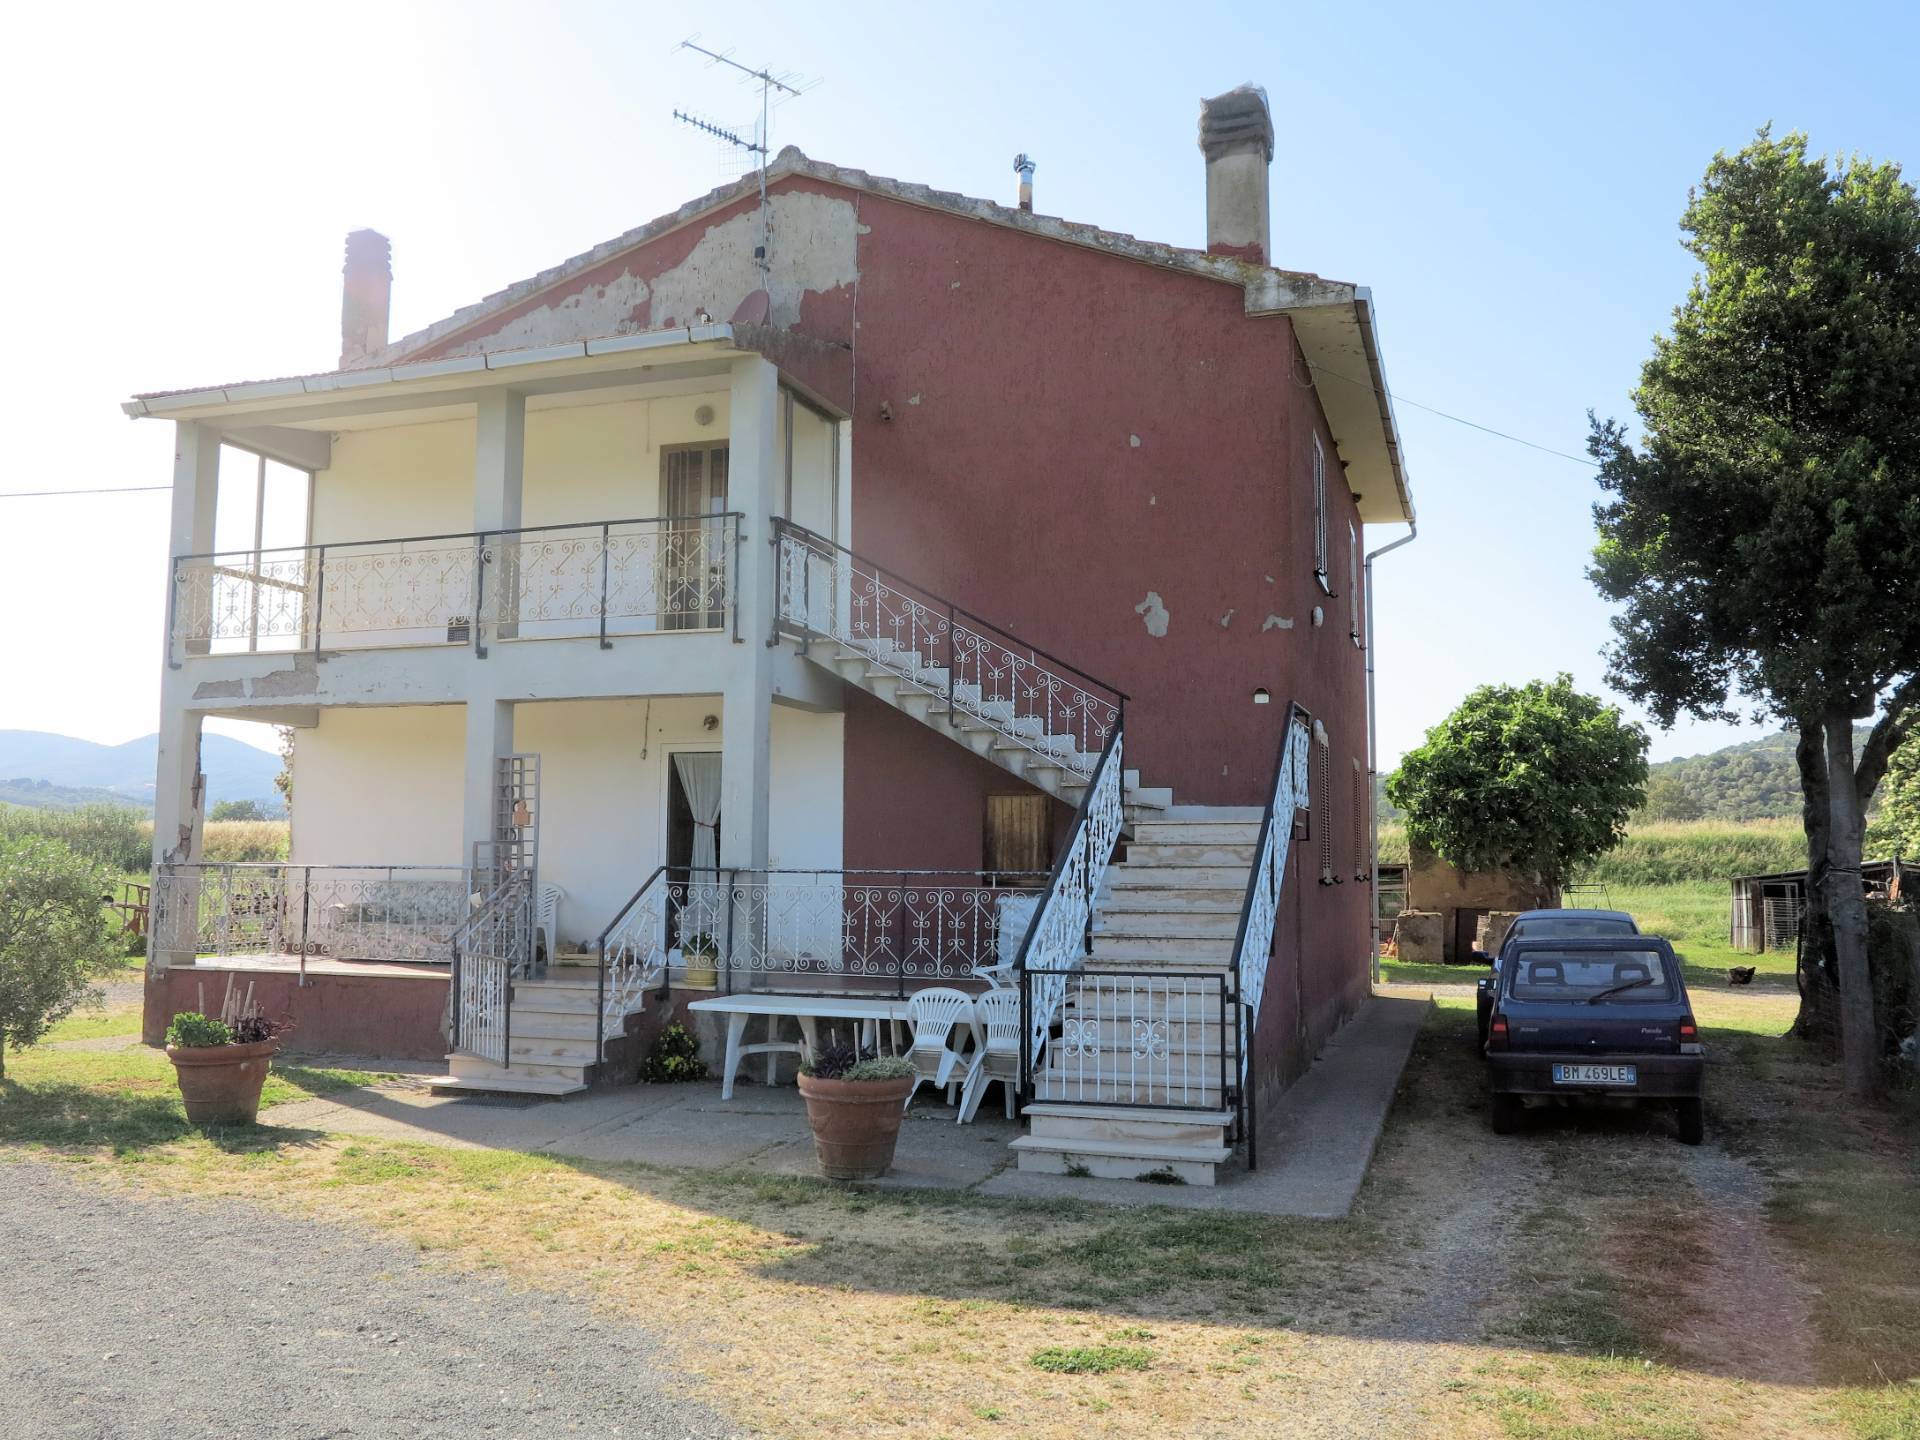 Rustico / Casale in vendita a Gavorrano, 8 locali, prezzo € 450.000 | PortaleAgenzieImmobiliari.it